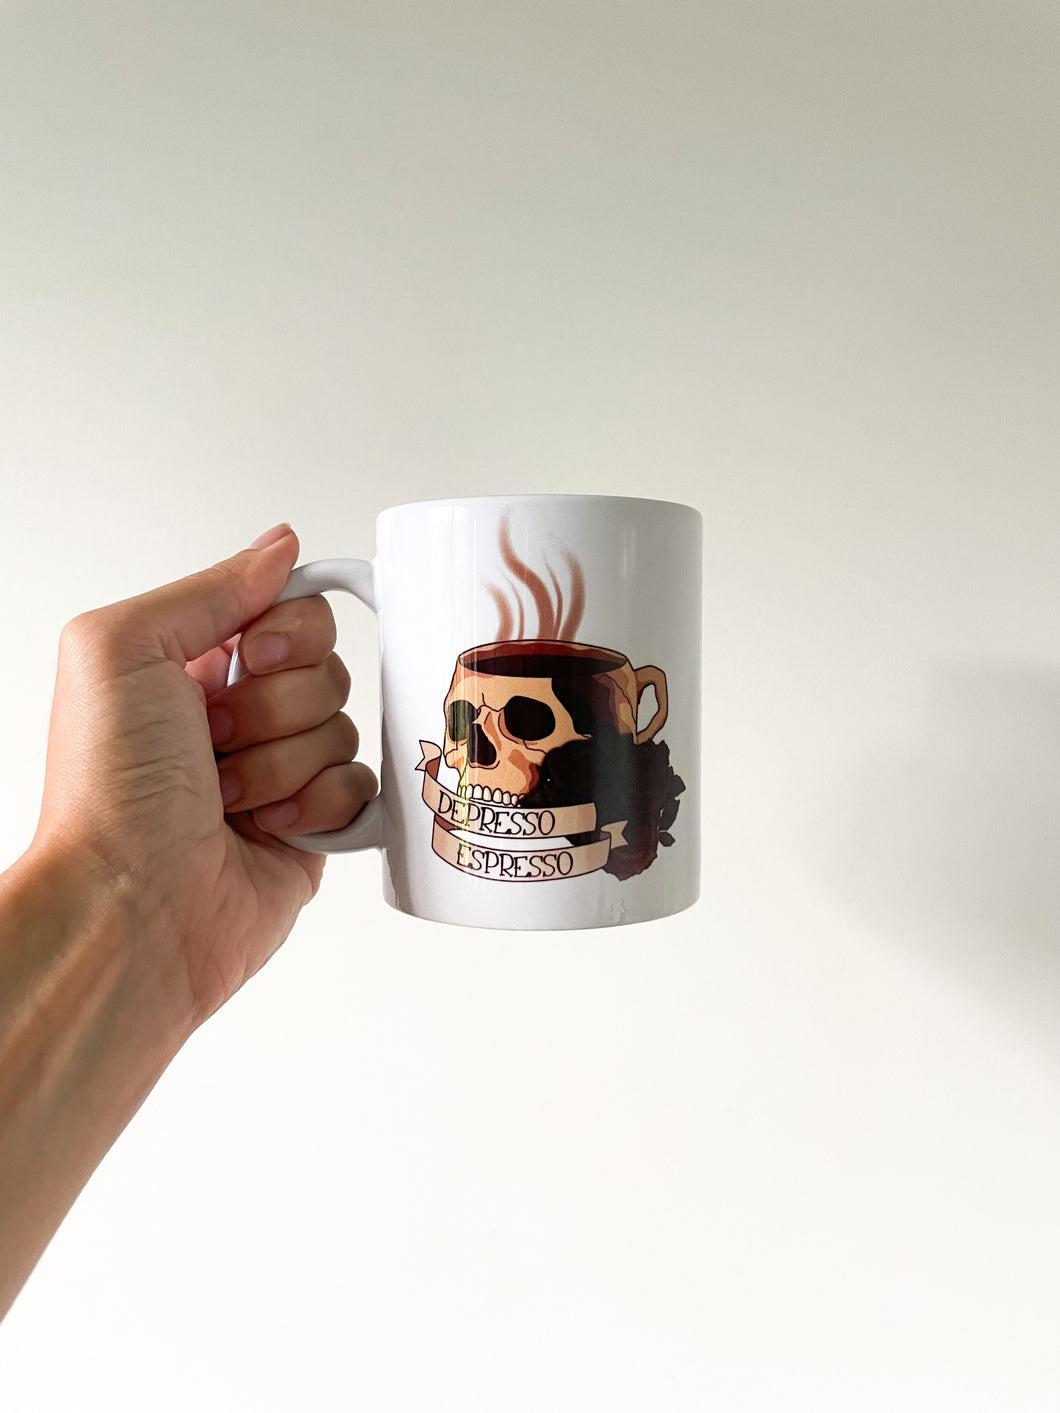 Depresso Espresso Mug